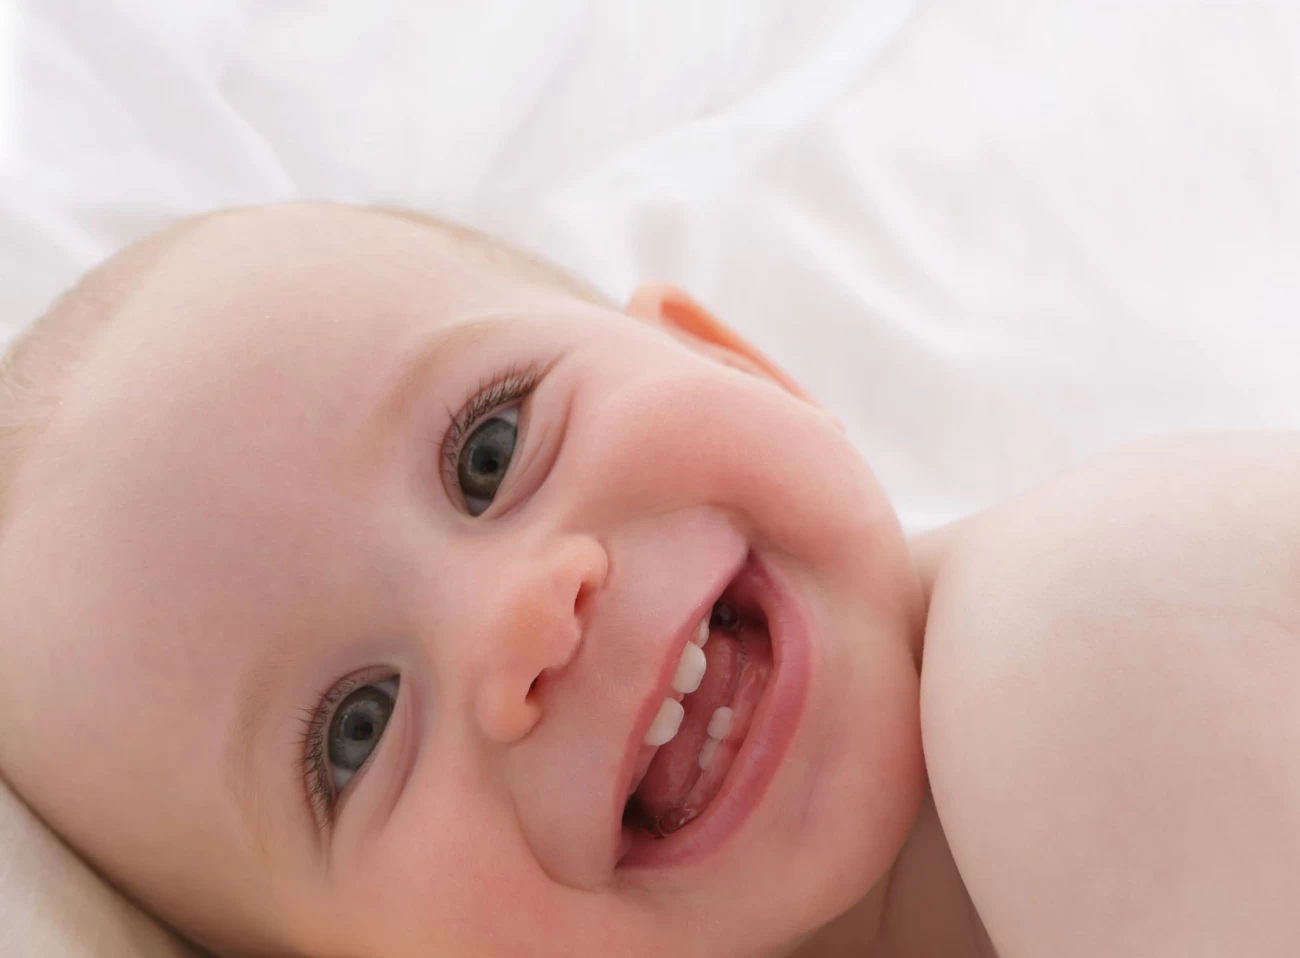 سن دندان در آوردن نوزاد